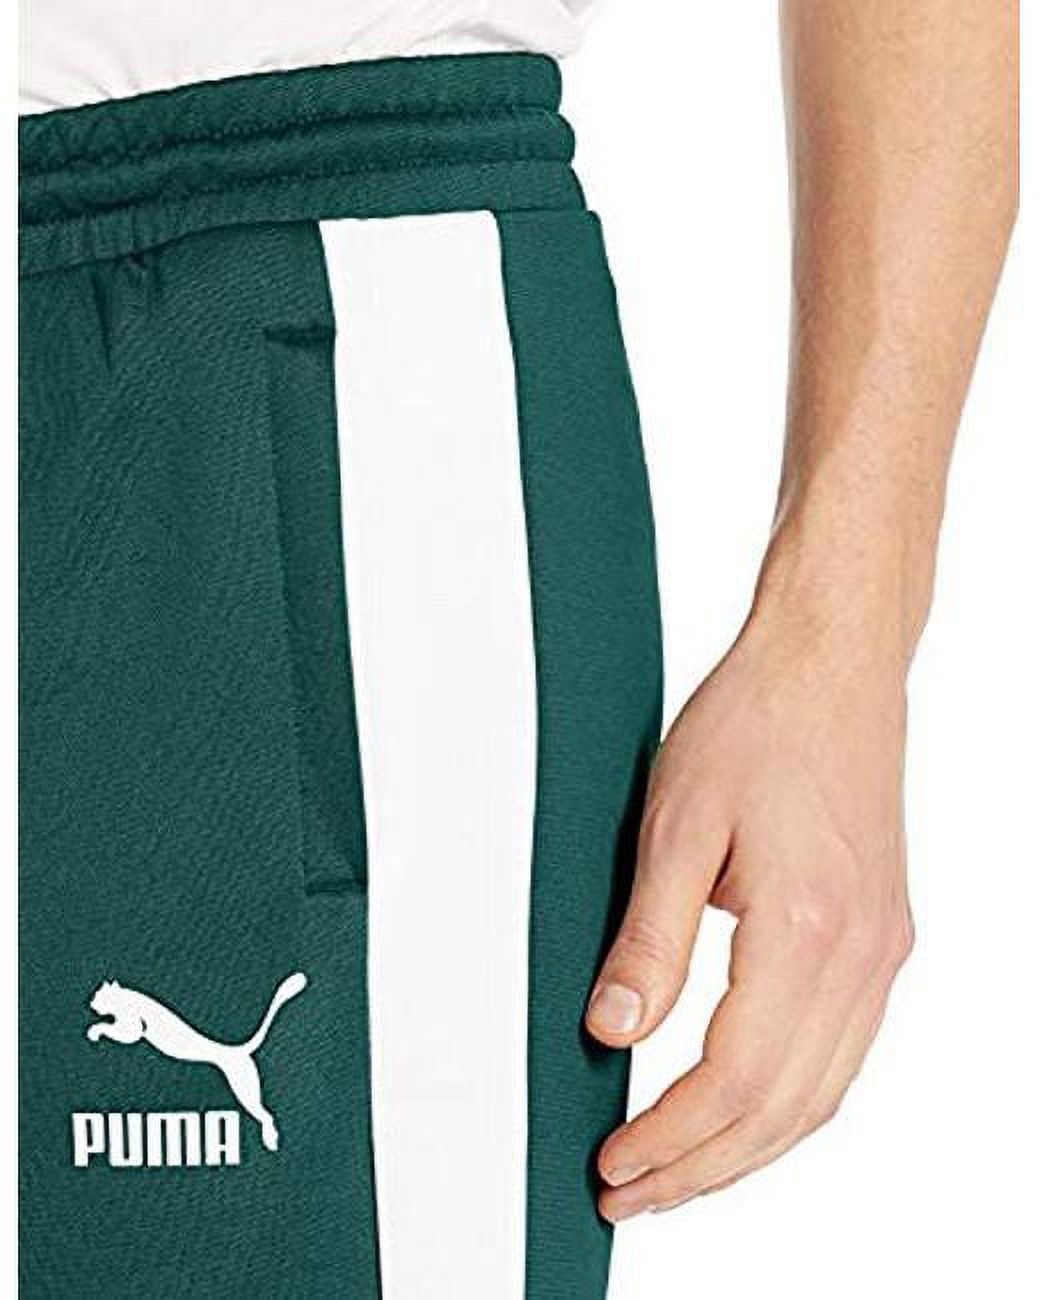 Puma Men's T7 Freizeit Short 11.5IN Ponderosa Pine 578675-08 - image 3 of 3